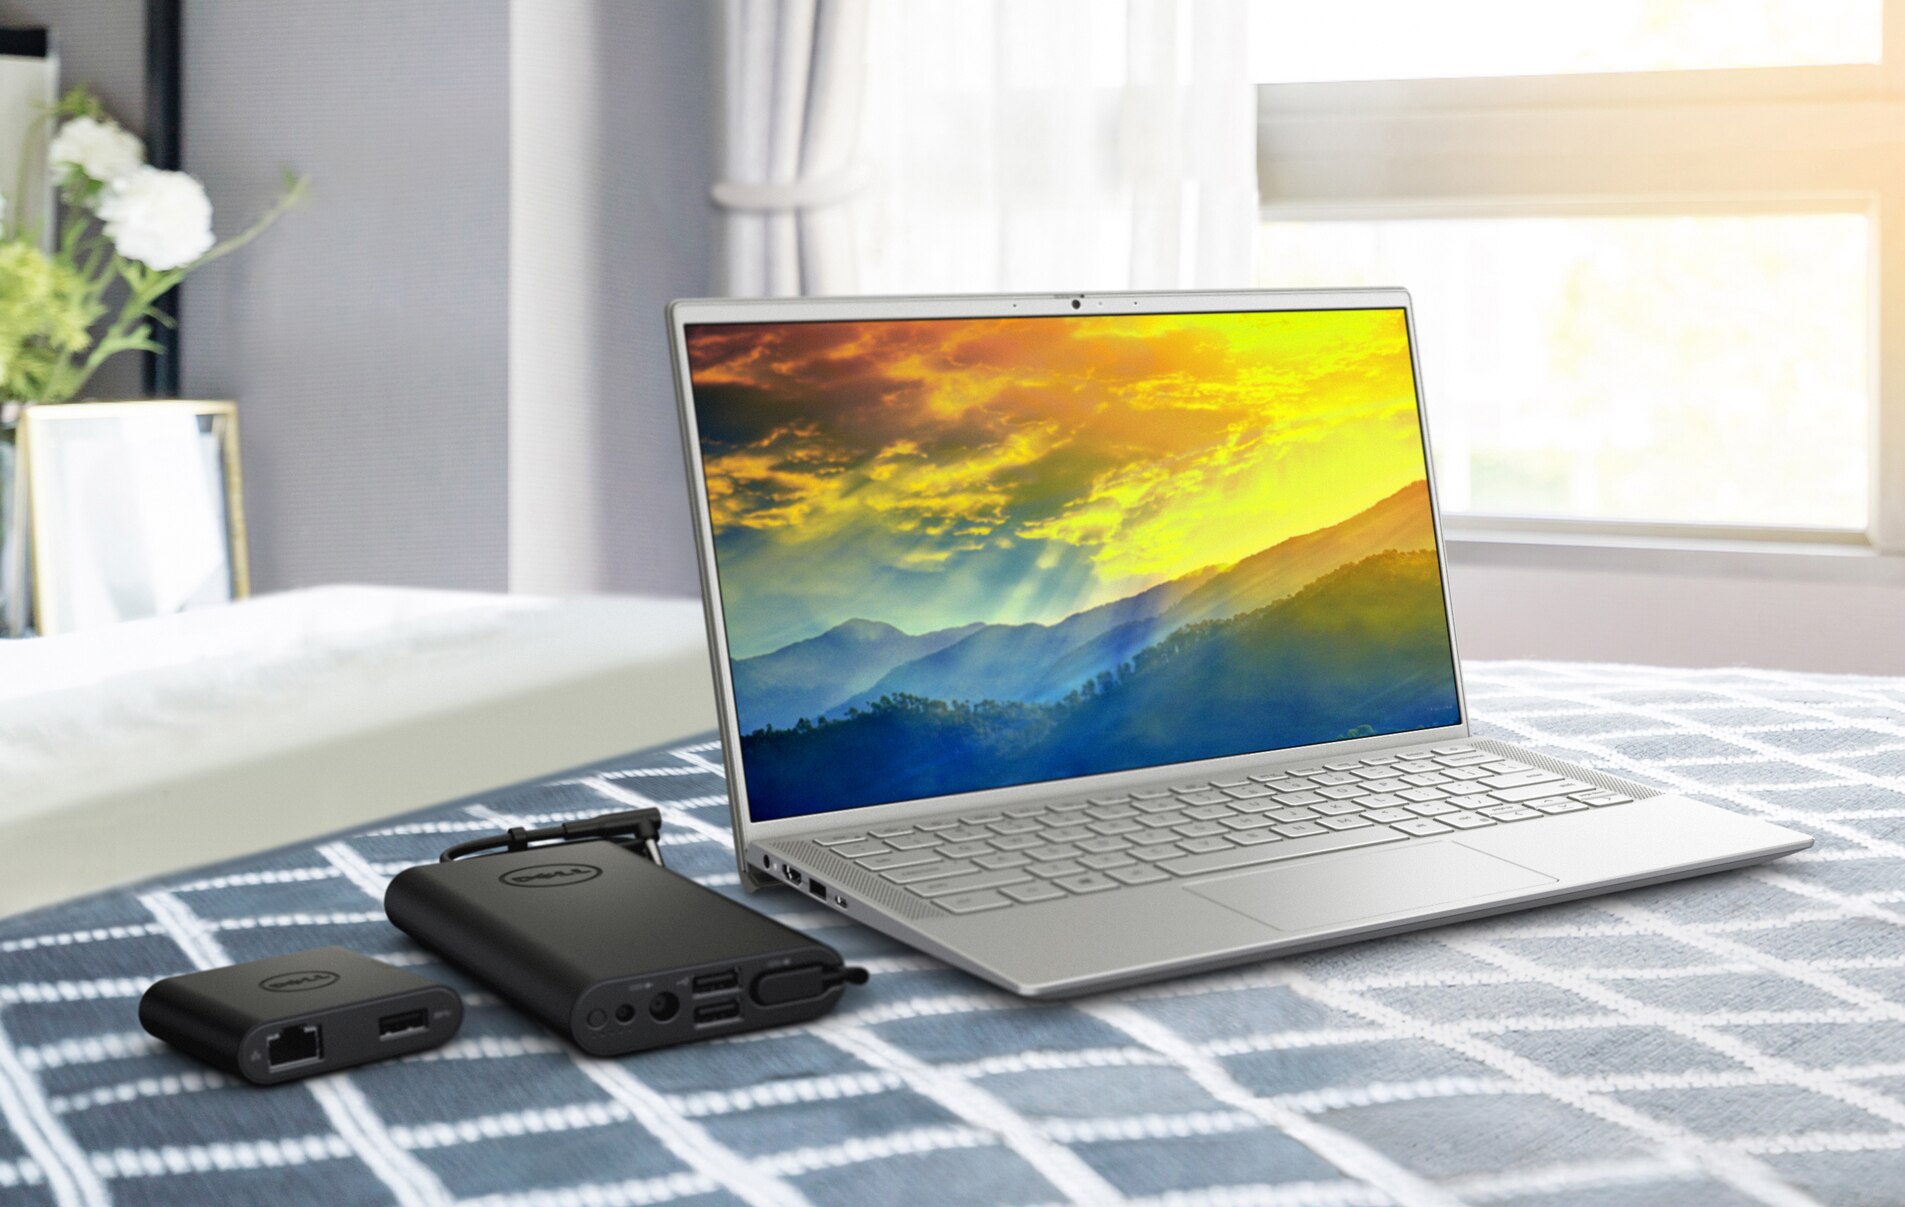 Afbeelding van een Dell laptop met een kleurrijke achtergrond op het scherm en batterijladers naast het product.